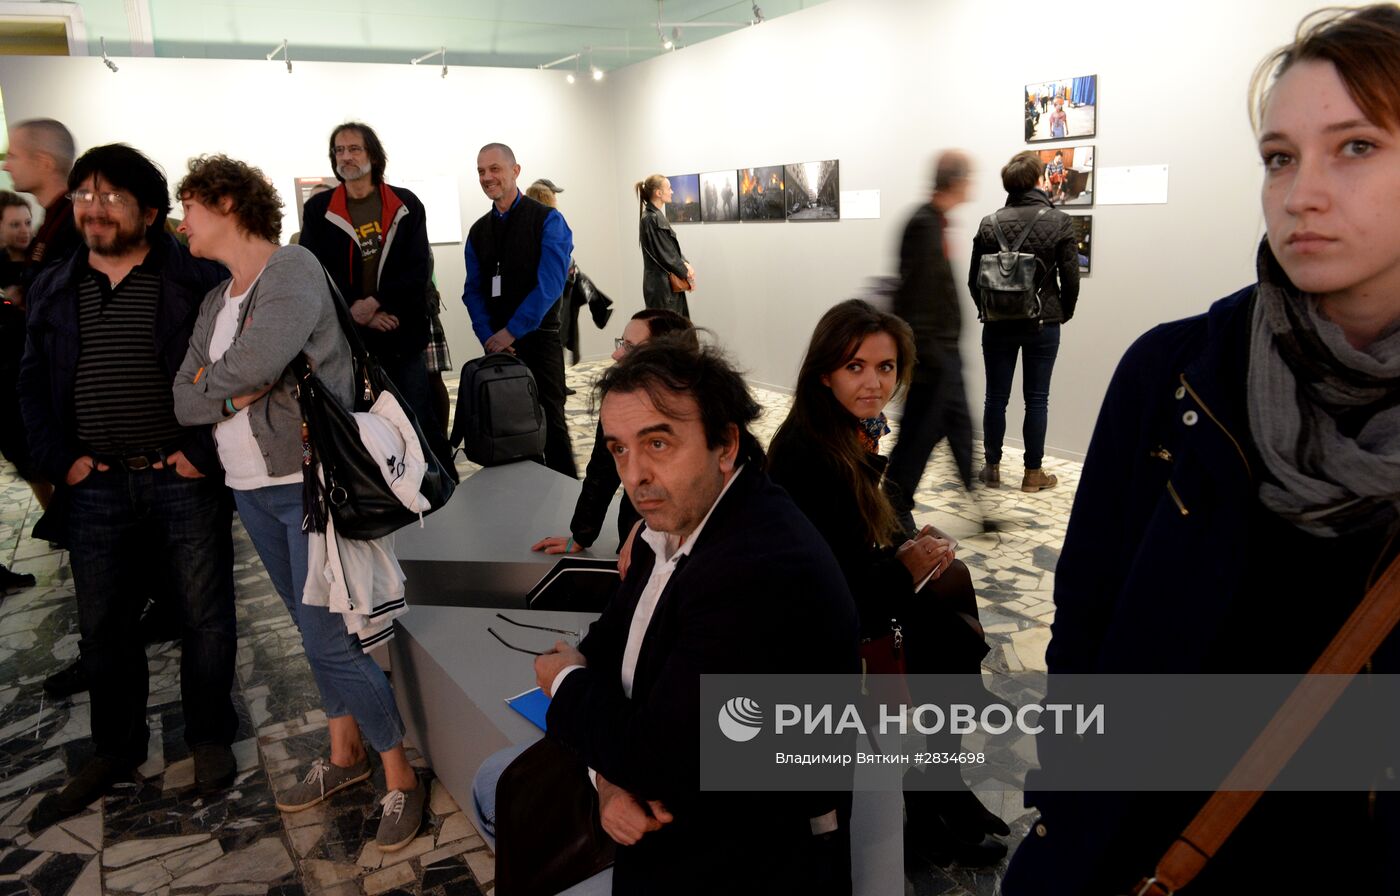 Открытие выставки "Фестиваль современной фотографии на ВДНХ"